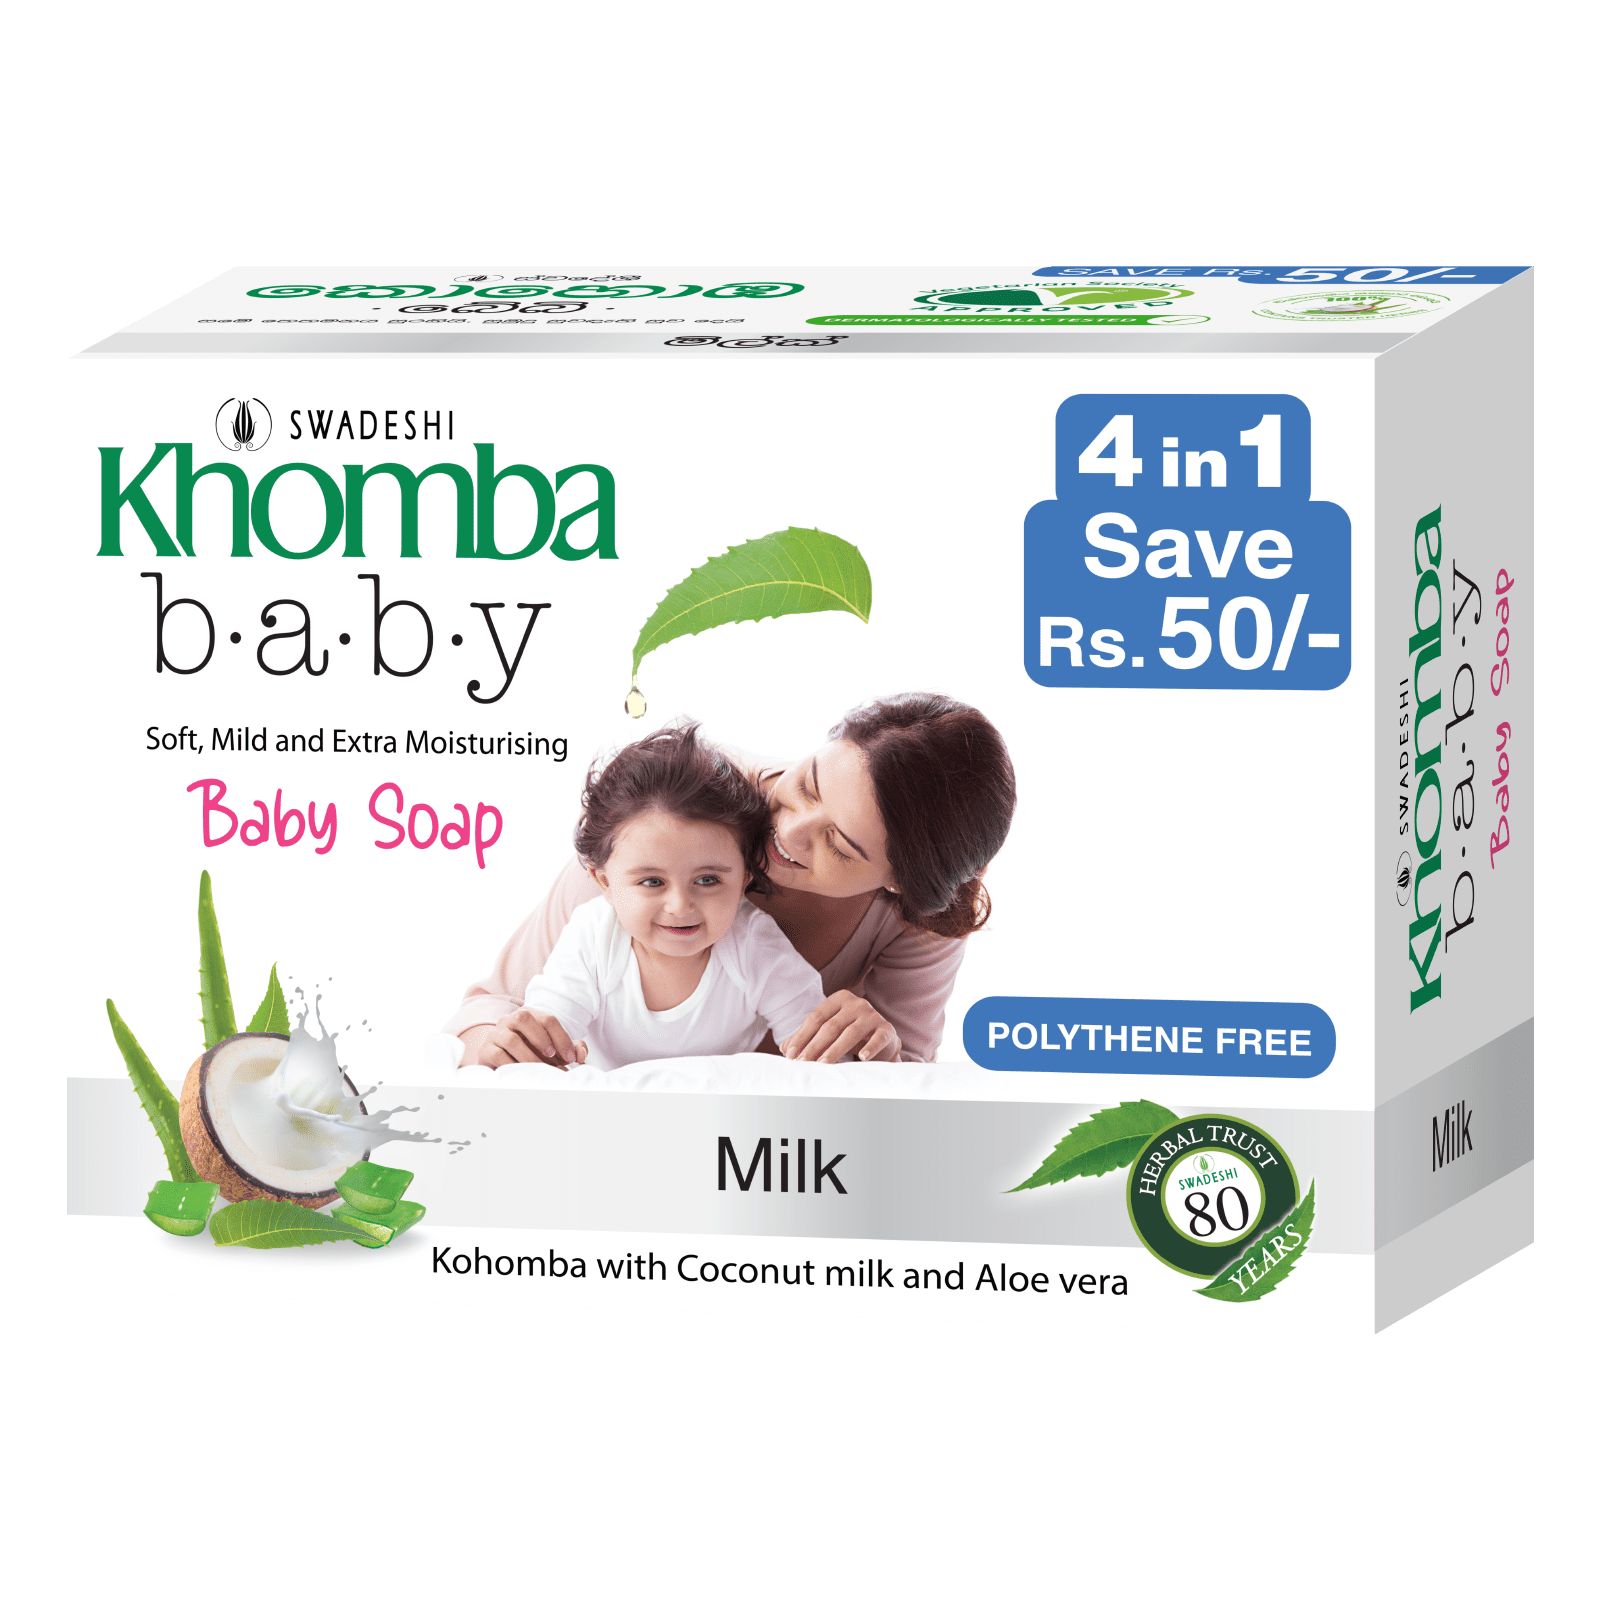 Khomba Baby Soap 4 in 1 Milk